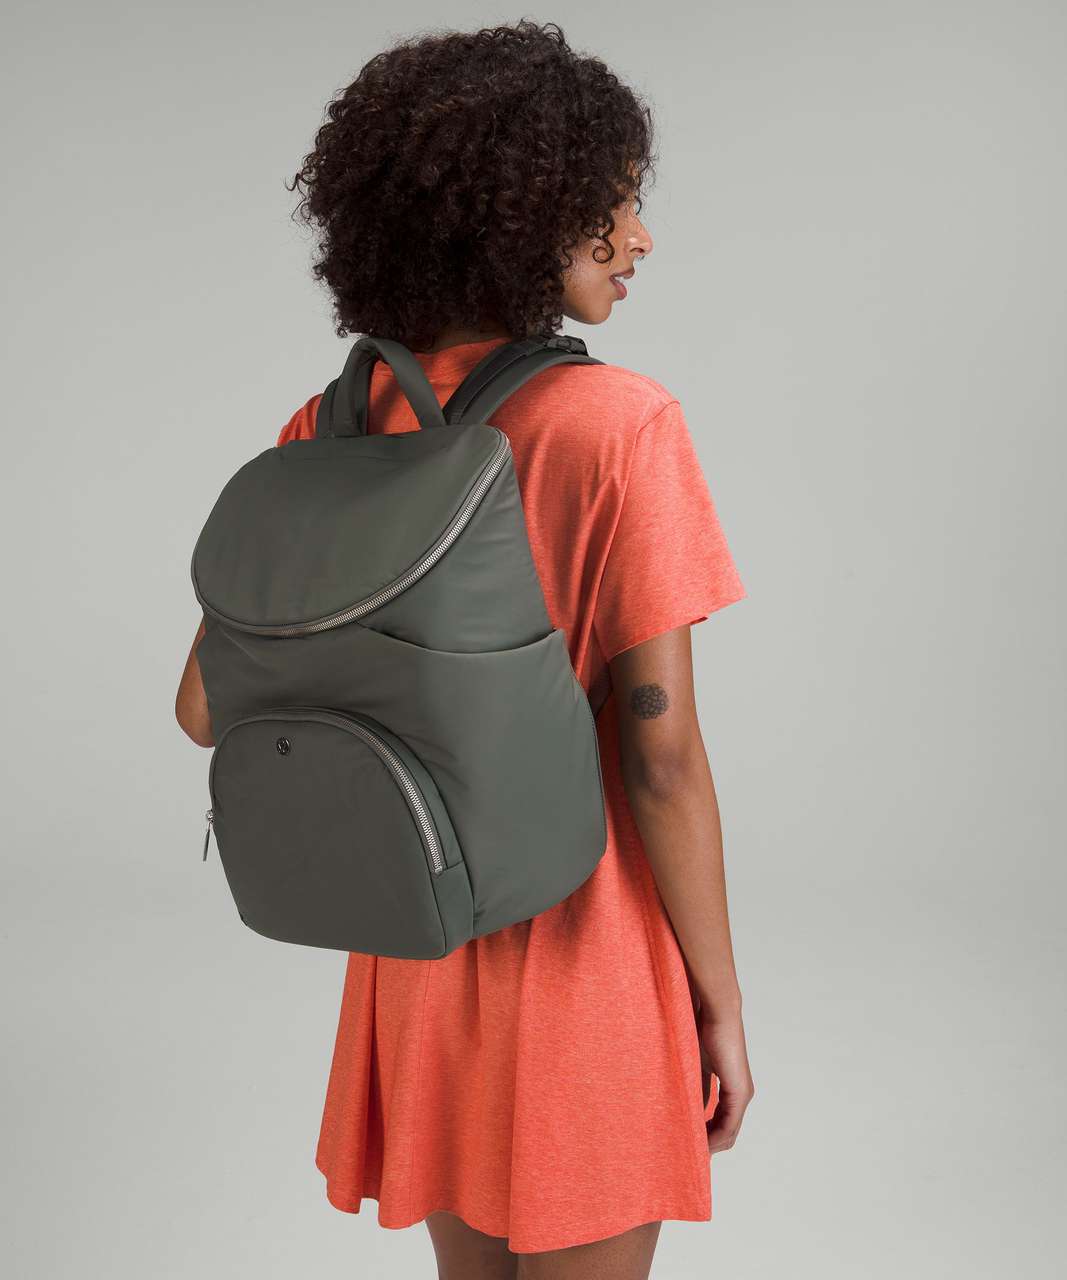 Lululemon New Parent Backpack 17L - Grey Sage / Silver Drop